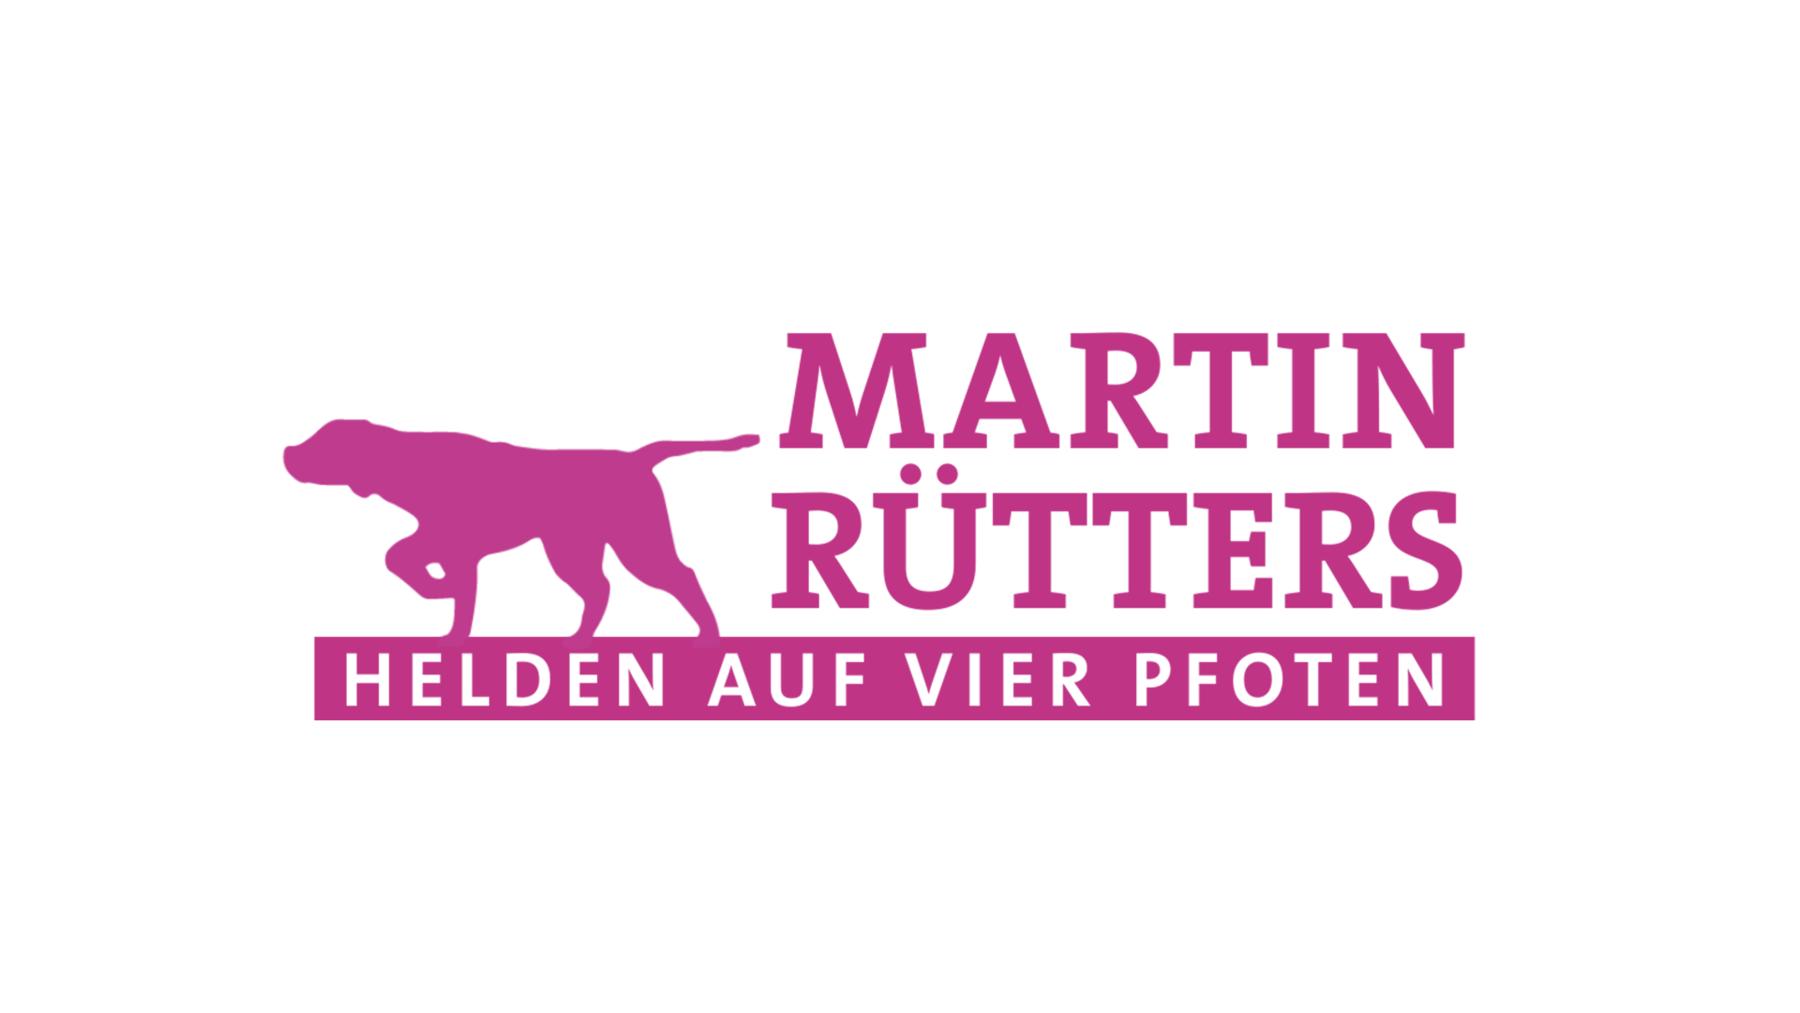 Martin Rütters Helden auf vier Pfoten